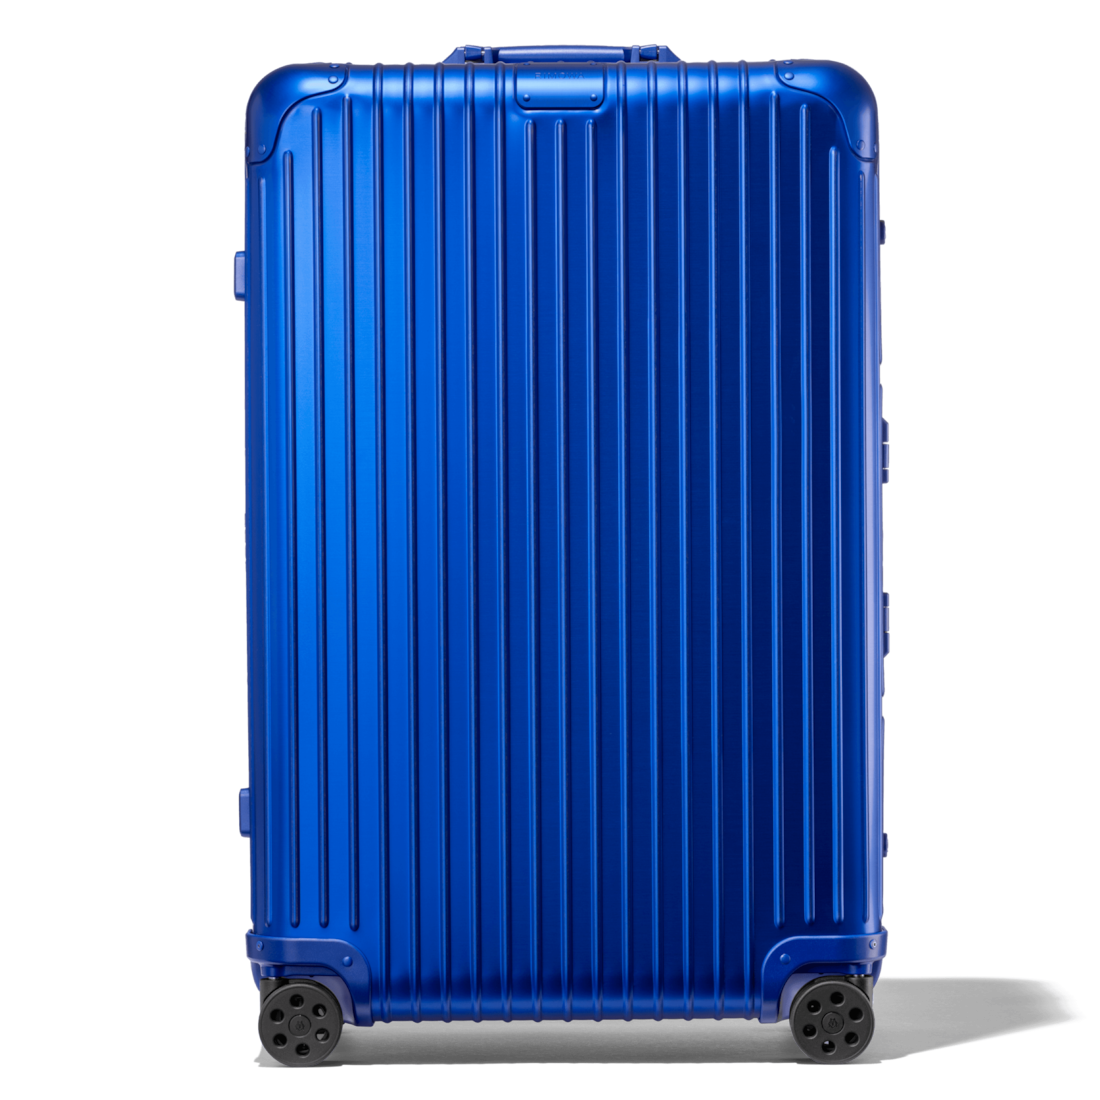 rimowa large luggage size